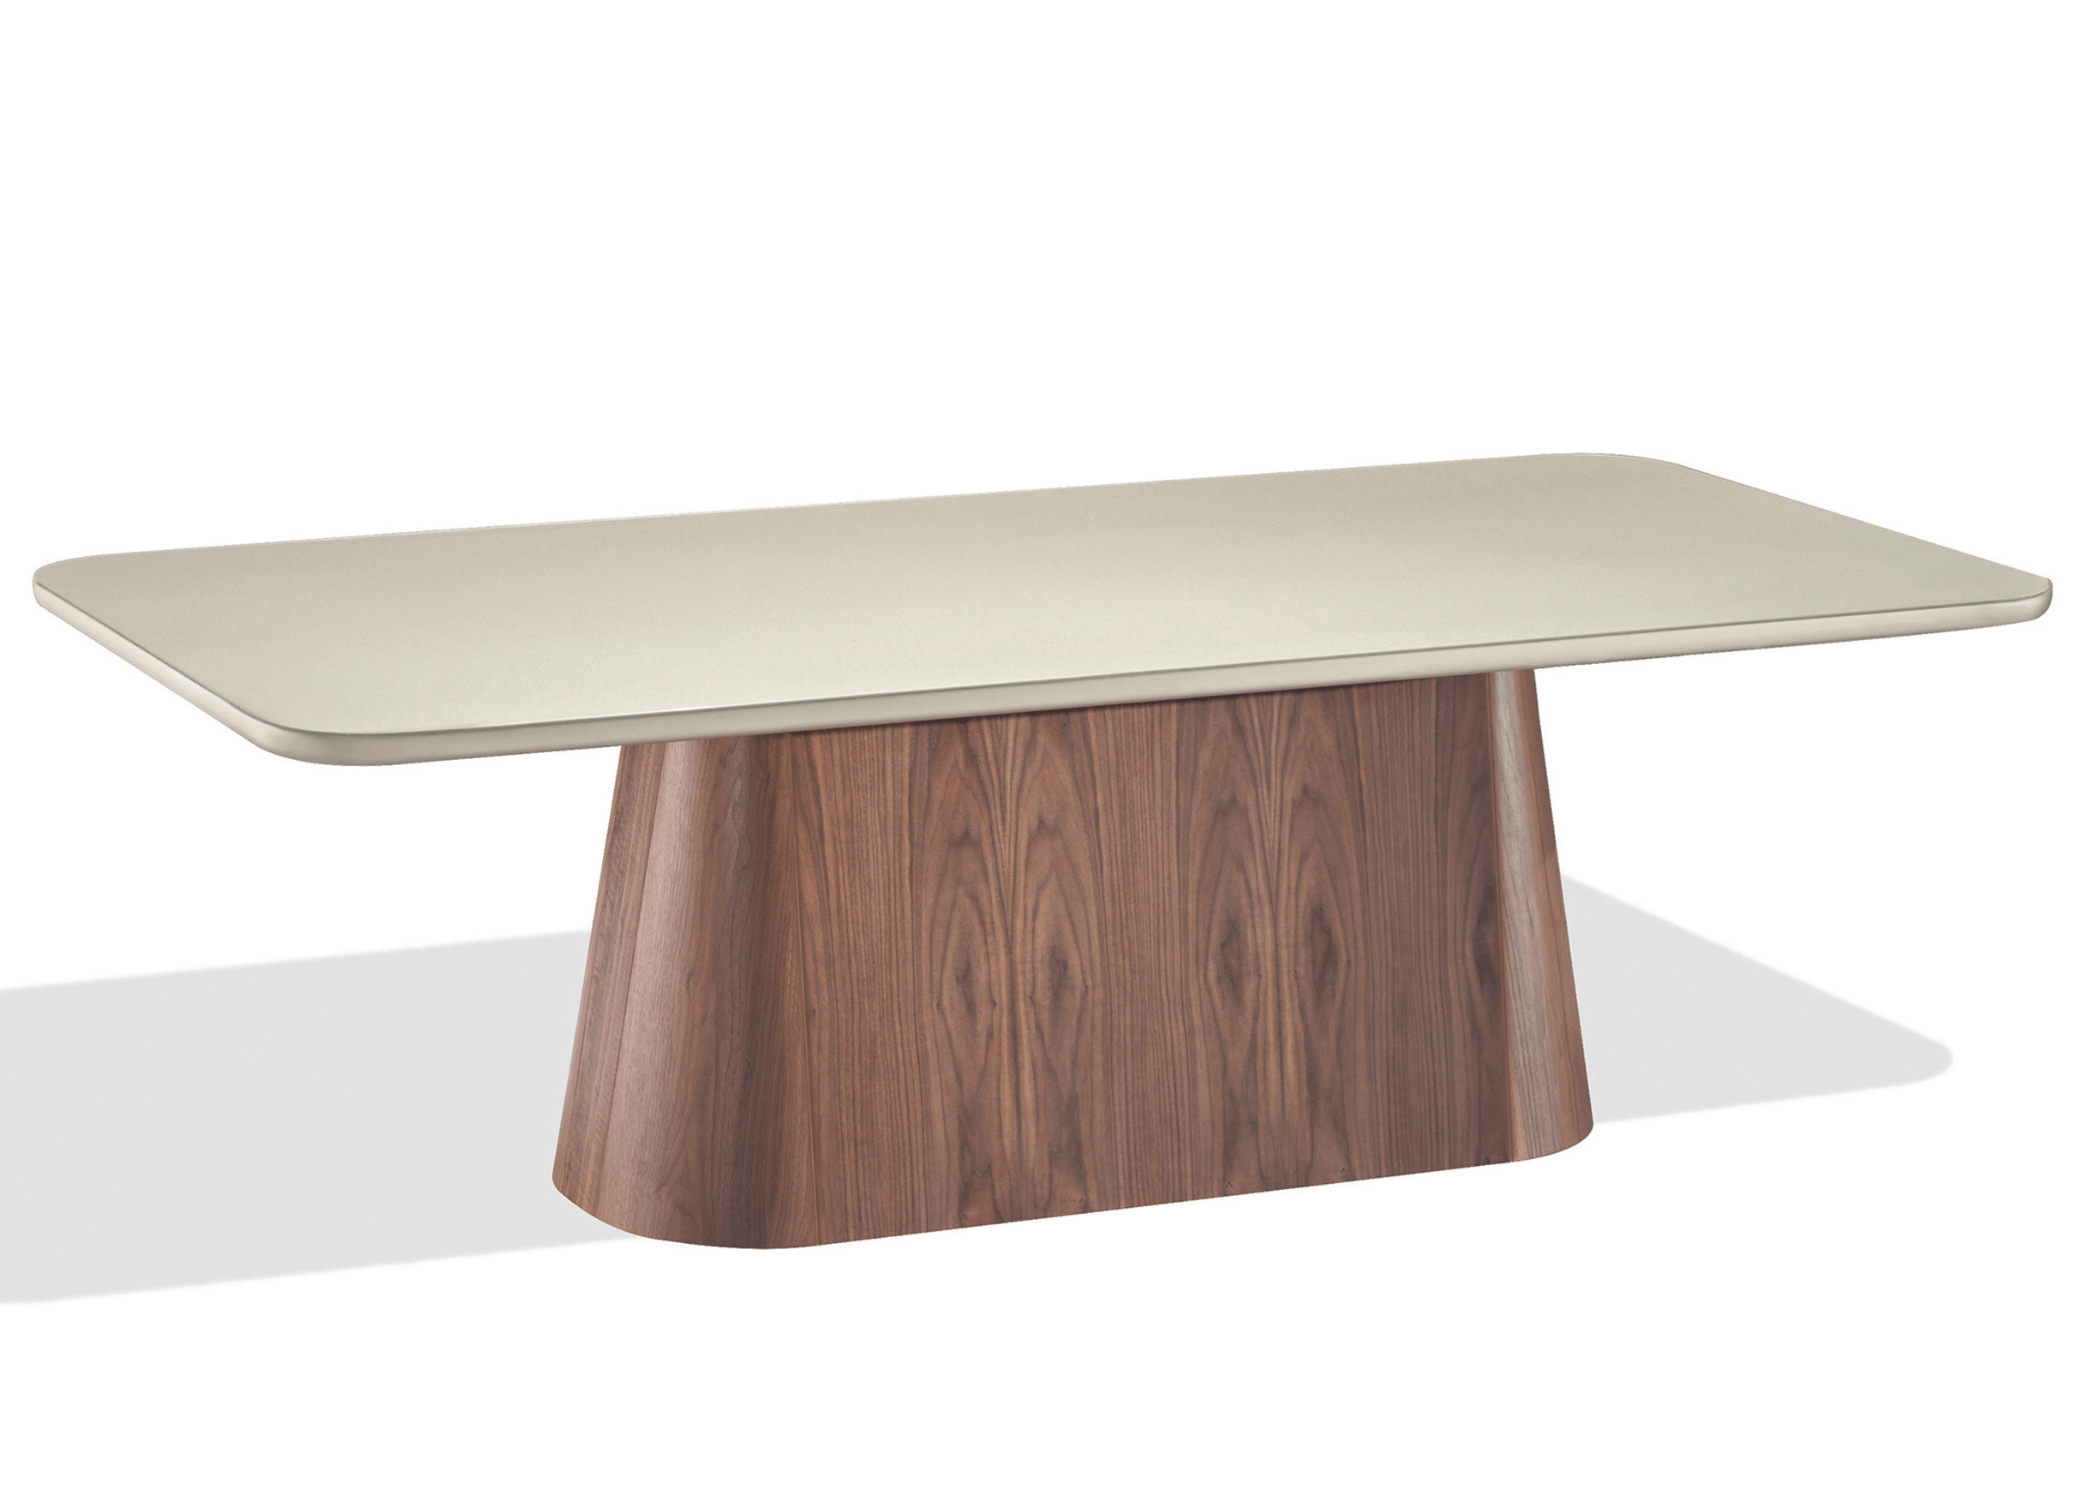 Refeição sofisticada em torno da mesa Luna, onde design e funcionalidade são unem em harmonia.